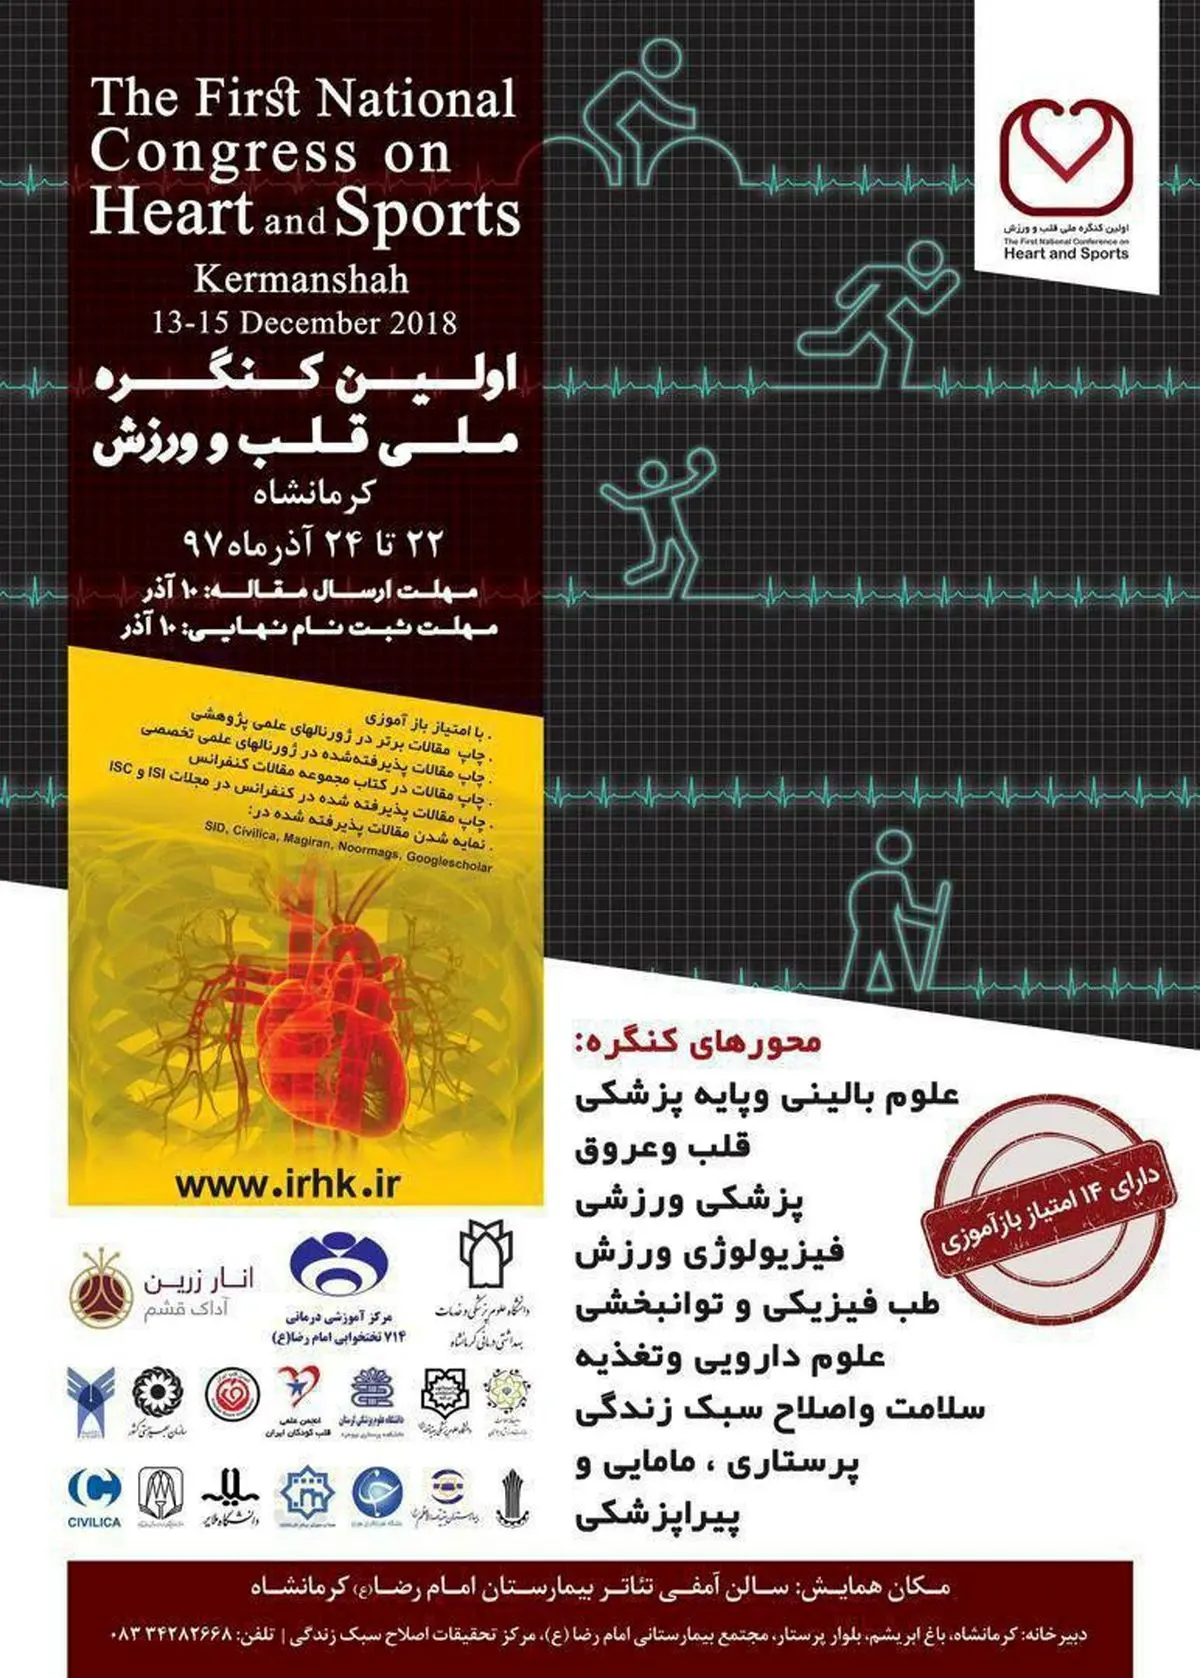 برگزاری اولین کنگره ملی قلب و ورزش در بیمارستان امام رضا(ع)